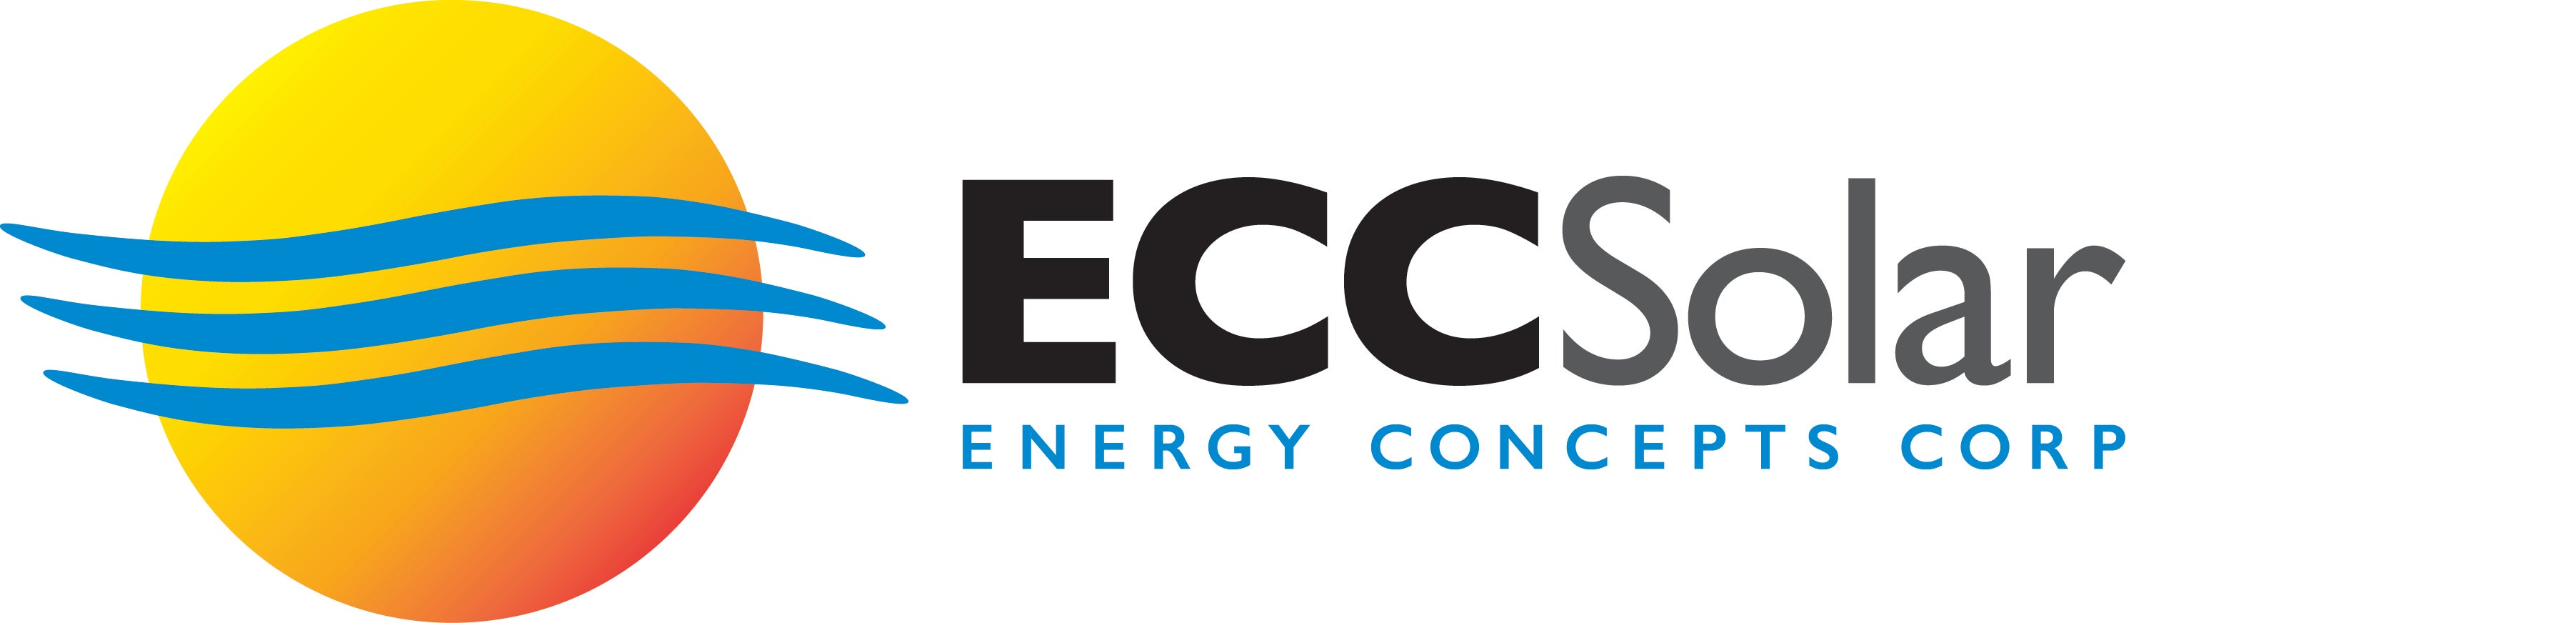 Energy Concepts Solar (ECC Solar) logo